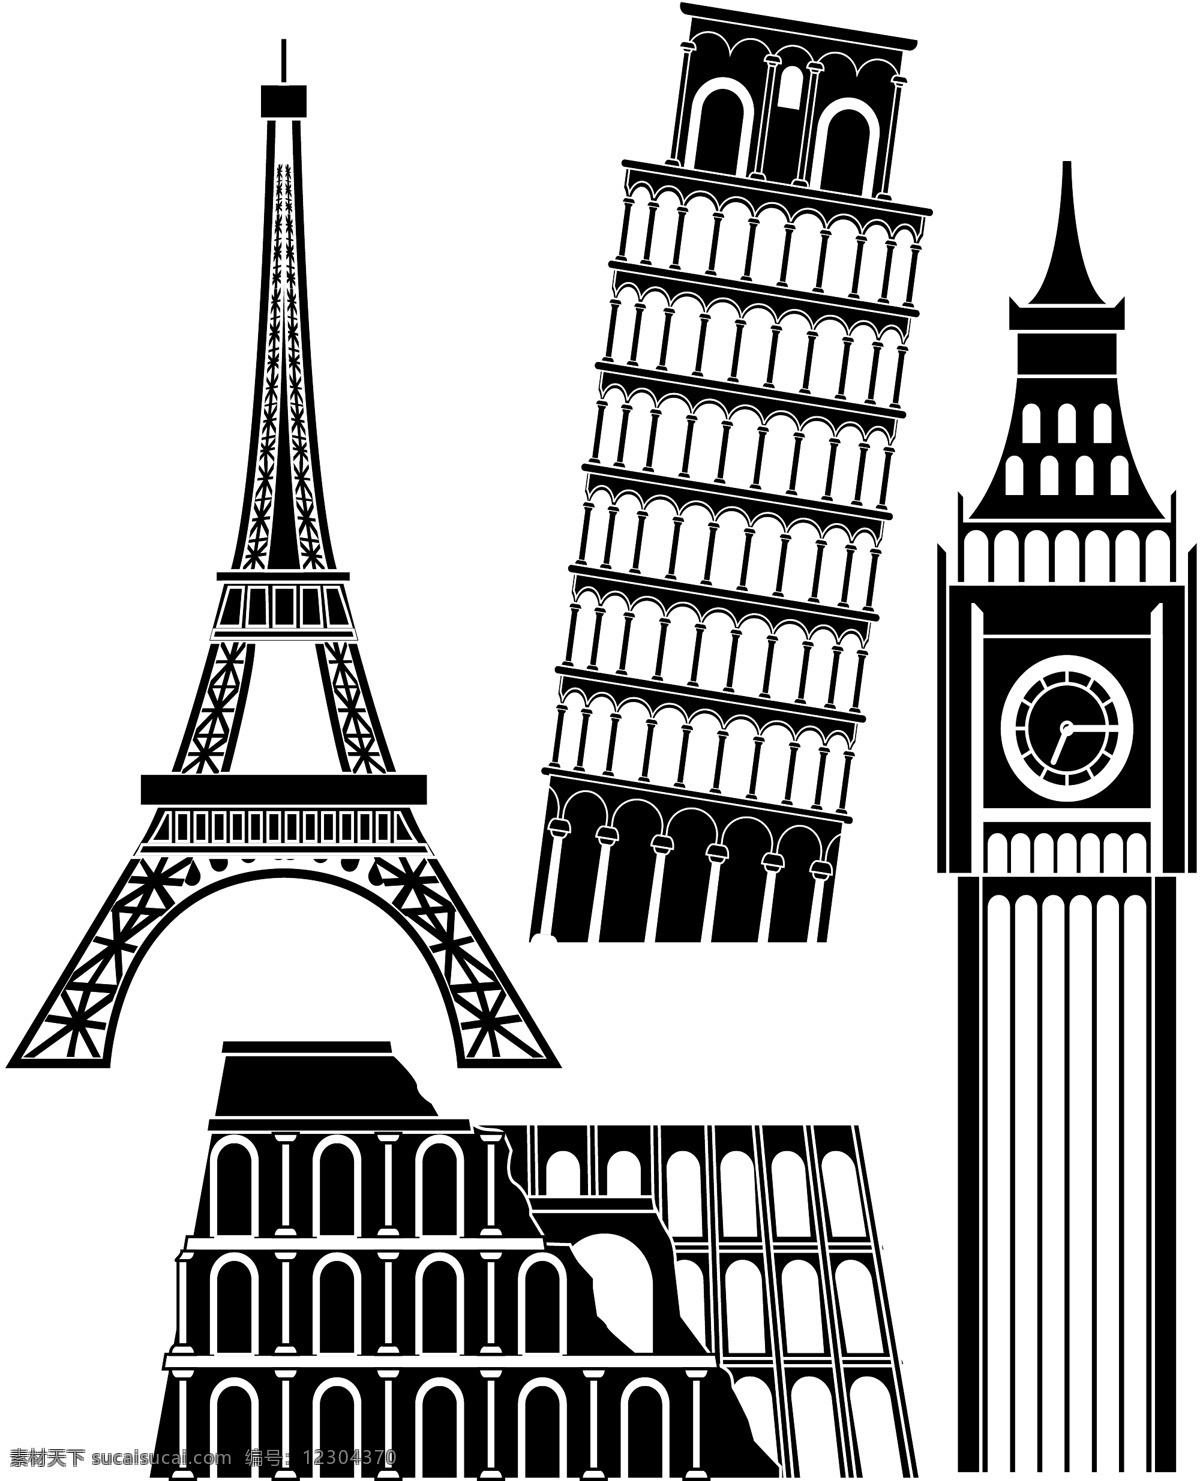 国外 著名 建筑物 矢量图 黑白剪影 巴黎铁塔 比萨斜塔 英国大本钟 罗马角斗场 城市建筑 建筑家居 矢量